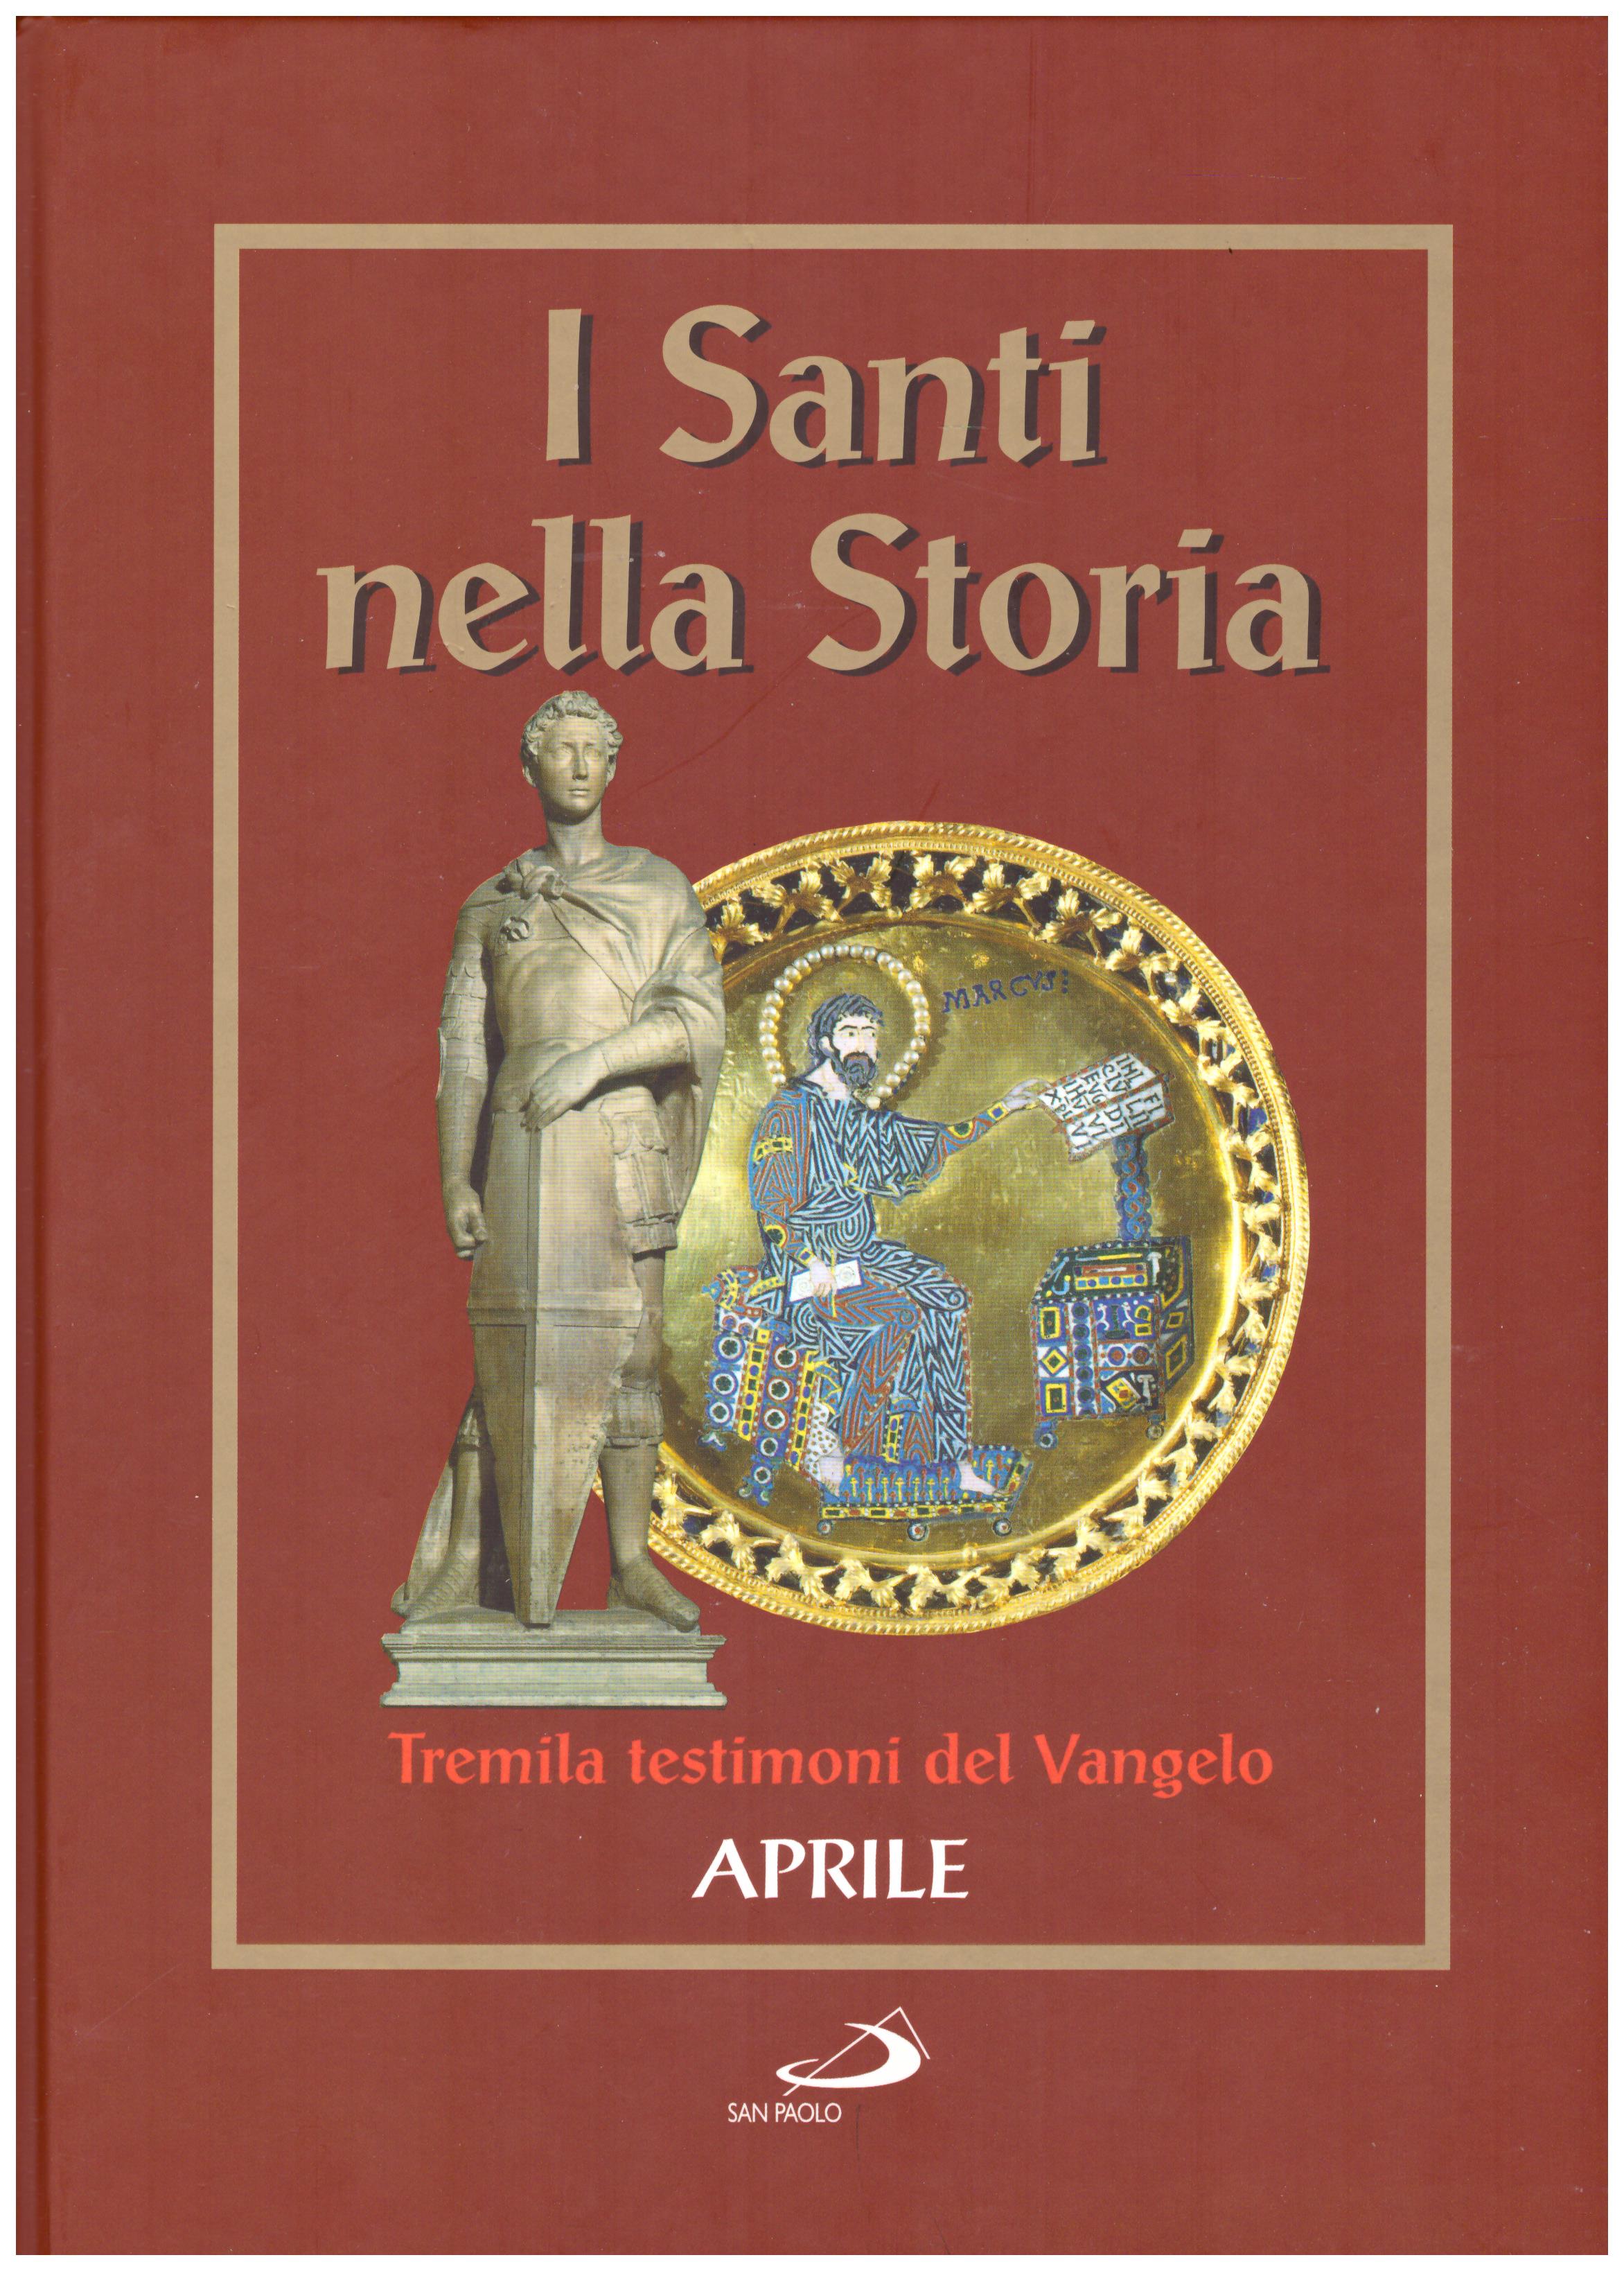 Titolo: I santi nella storia, tremila testimoni del Vangelo, Aprile Autore : AA.VV.   Editore: San Paolo 2006